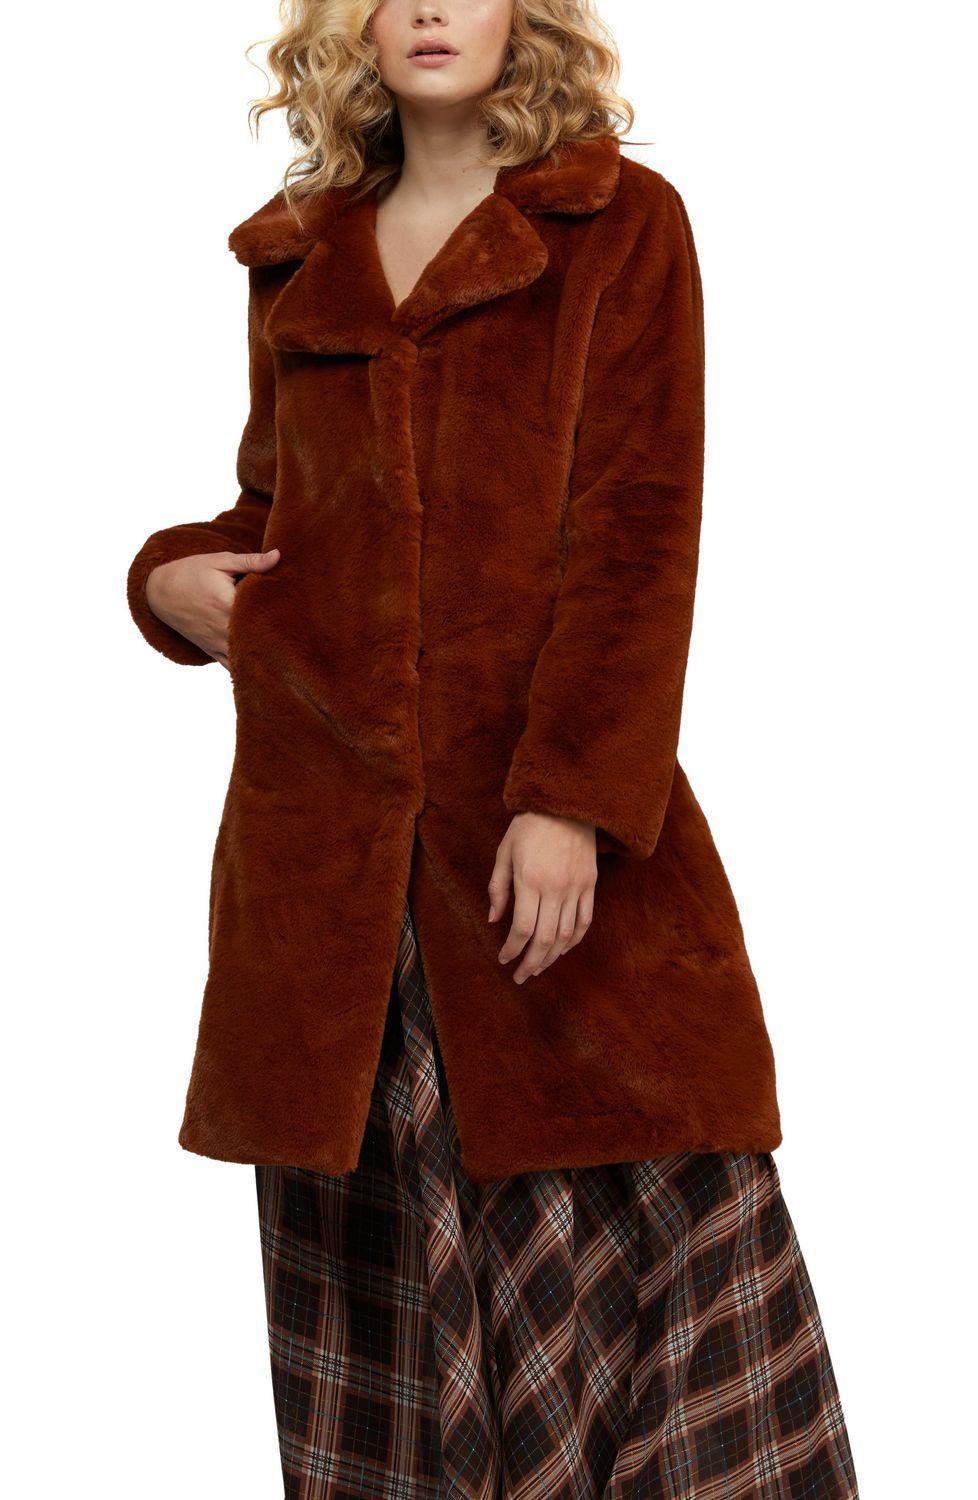 Crumpe Le manteau en fausse fourrure Badgely Mishka de 200 $ est en vente pour seulement 40 $ chez Walmart 